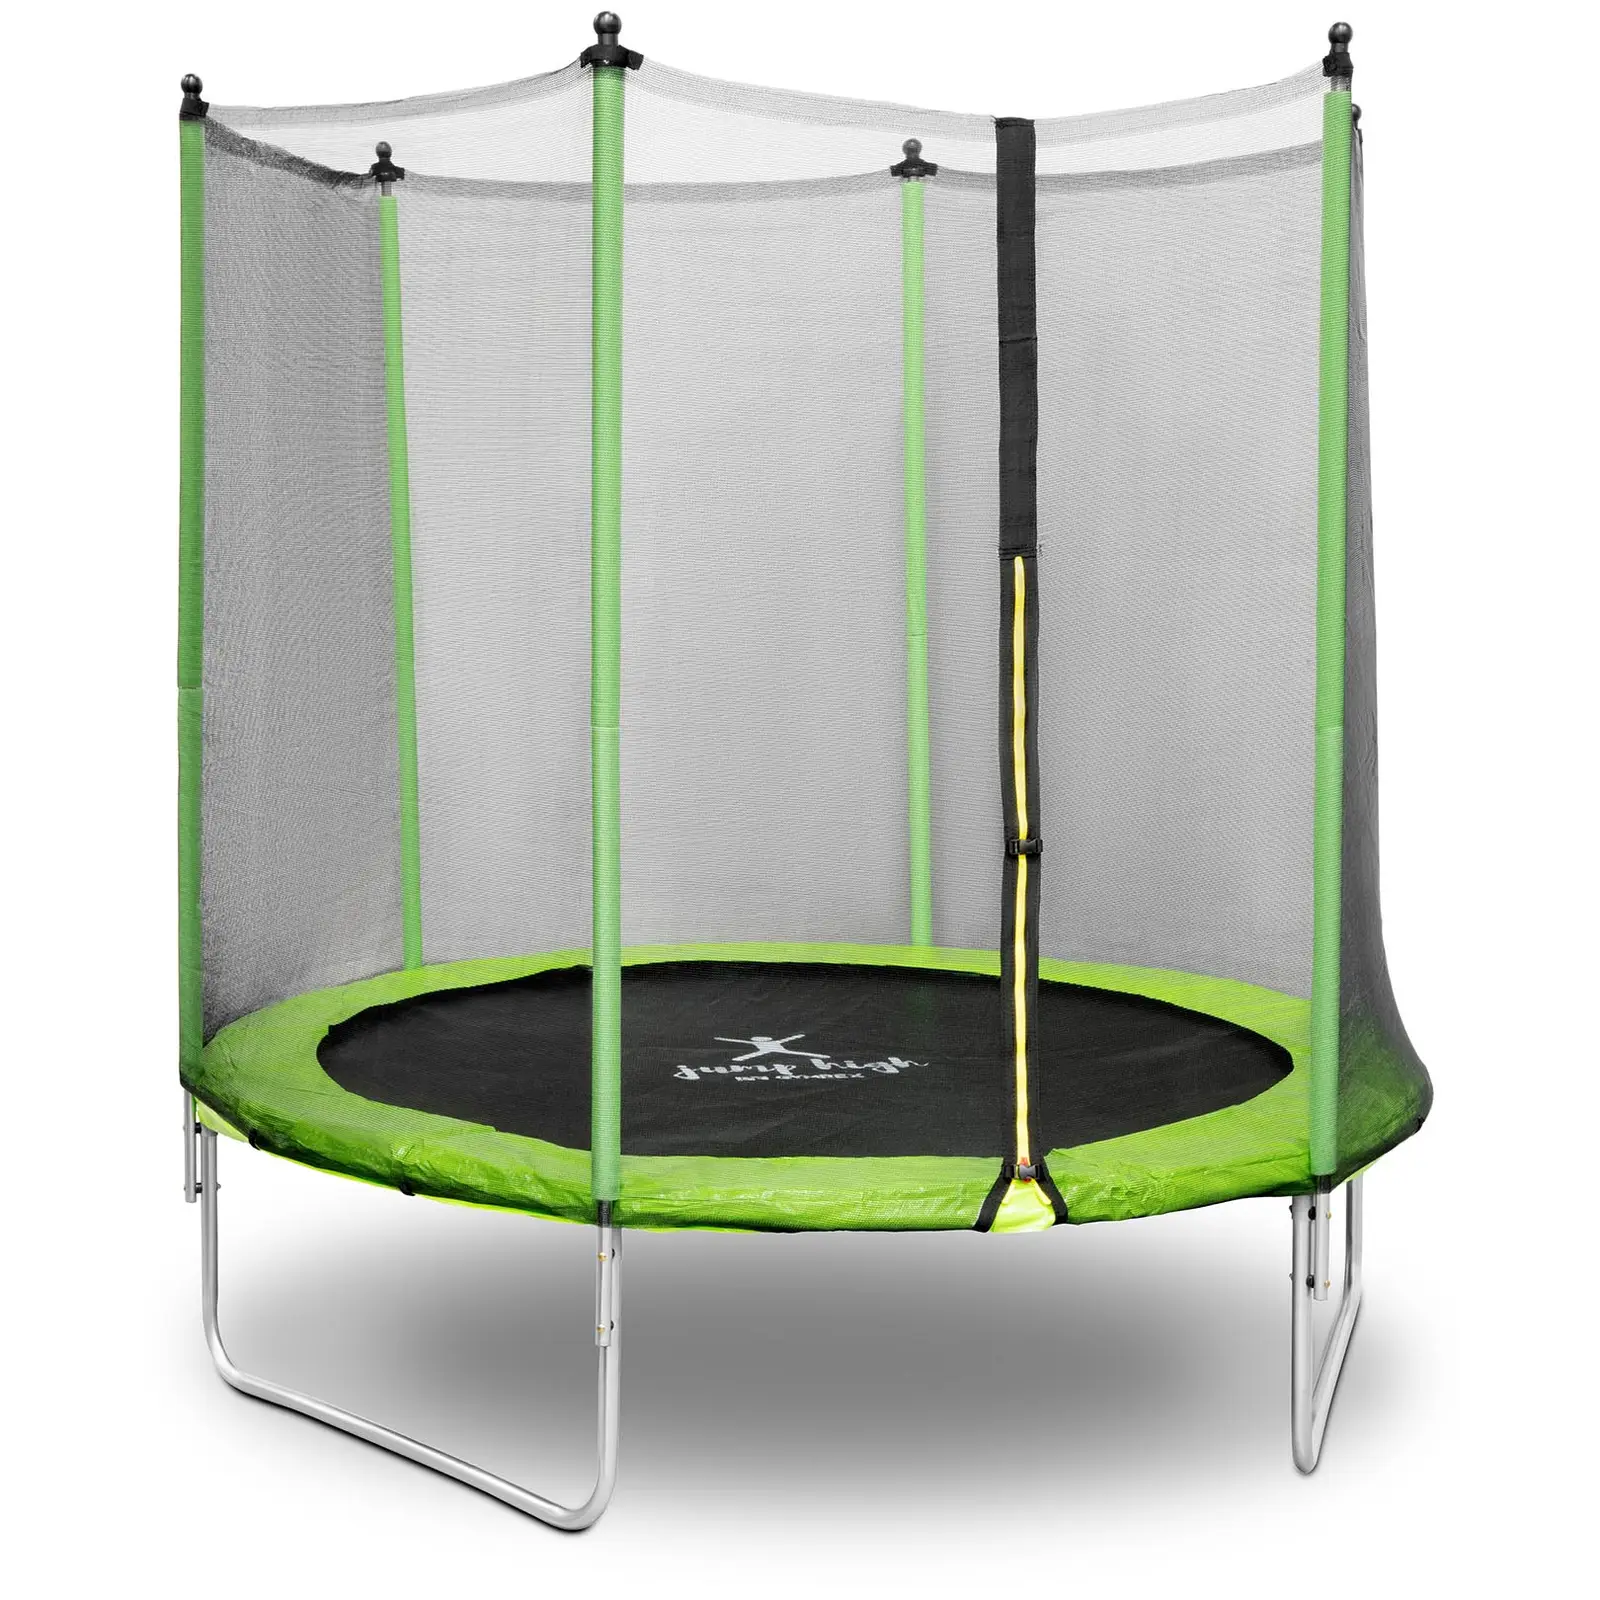 Trampolin med net - 244 cm i diameter - 80 kg - sort/grøn